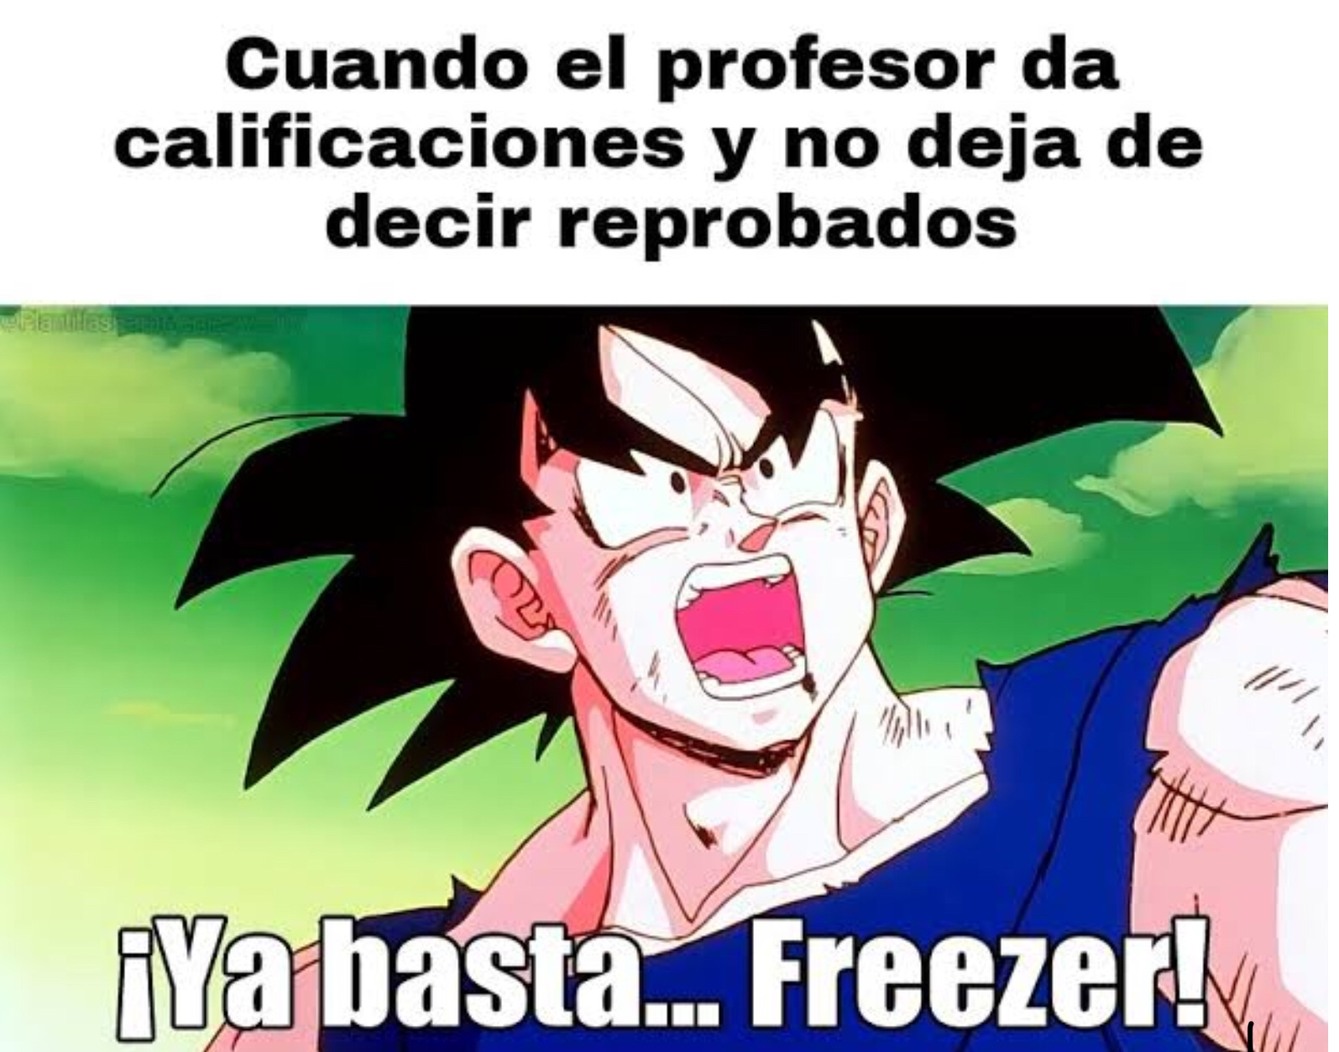 freezer XD - meme